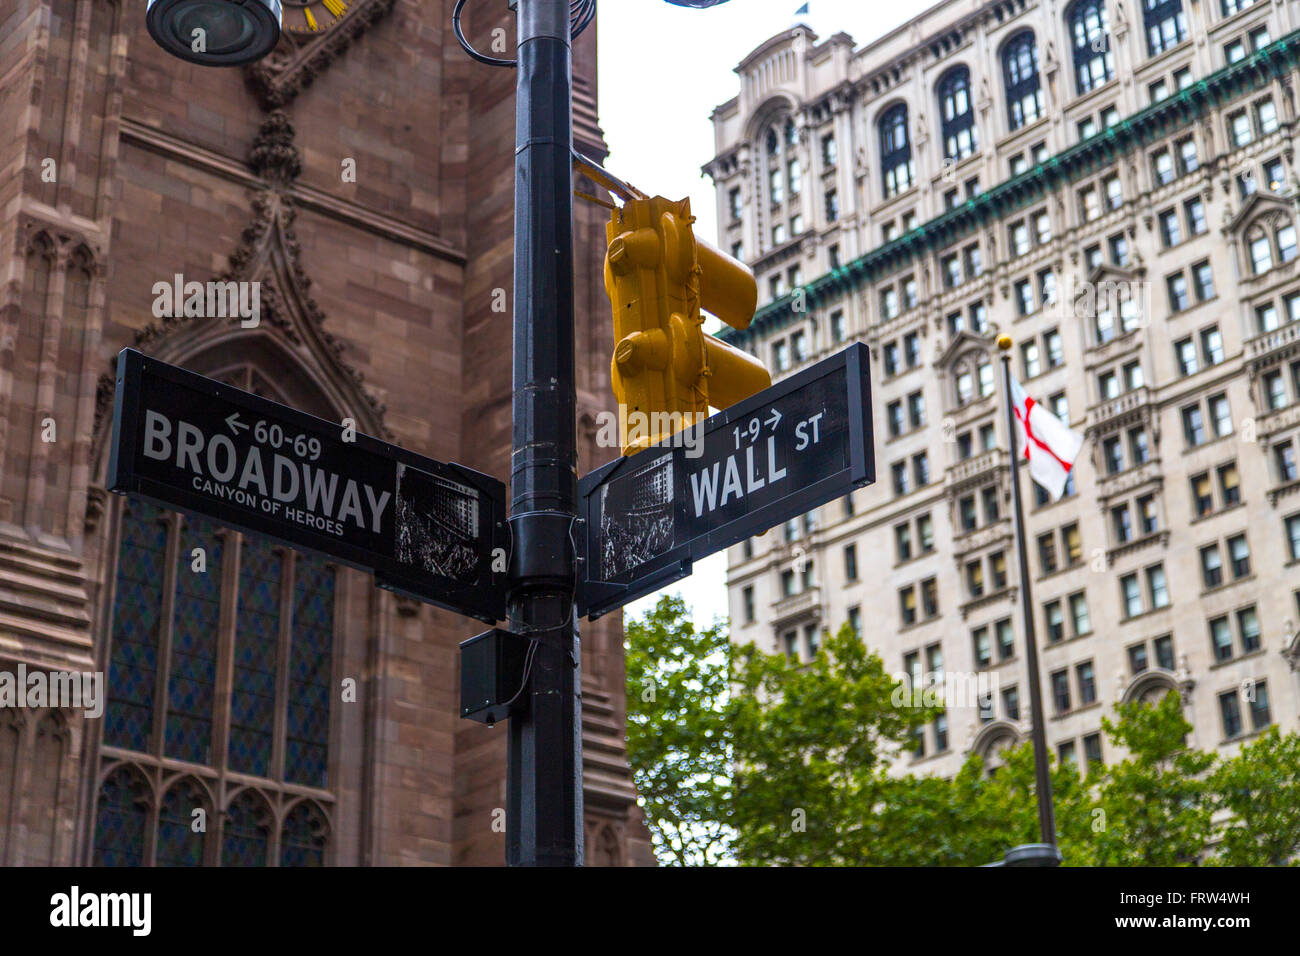 Broadway et Wall Street Signs, Manhattan, New York, USA Banque D'Images